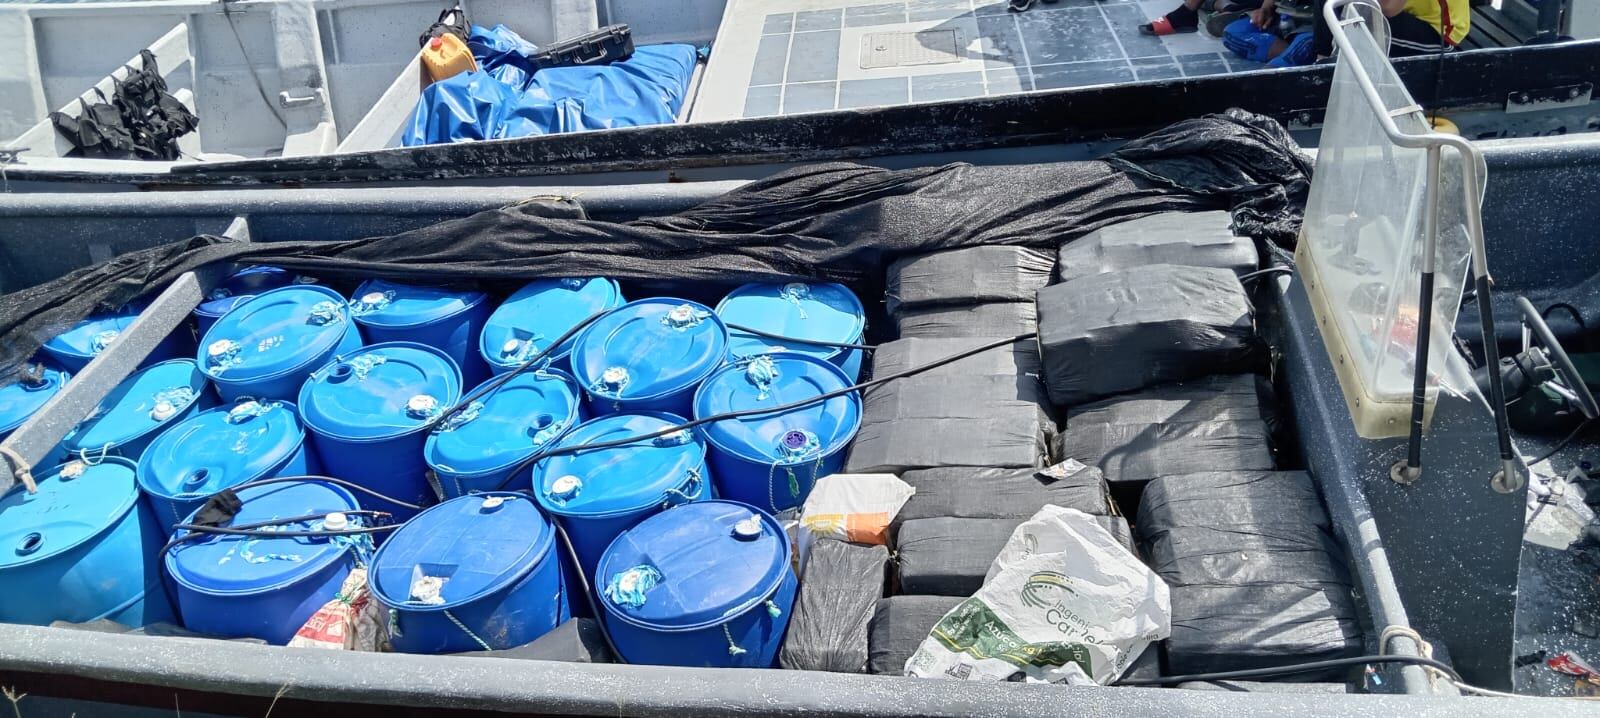 La droga estaba oculta en varios tanques que transportaba la embarcación. Foto/Cortesía Senan